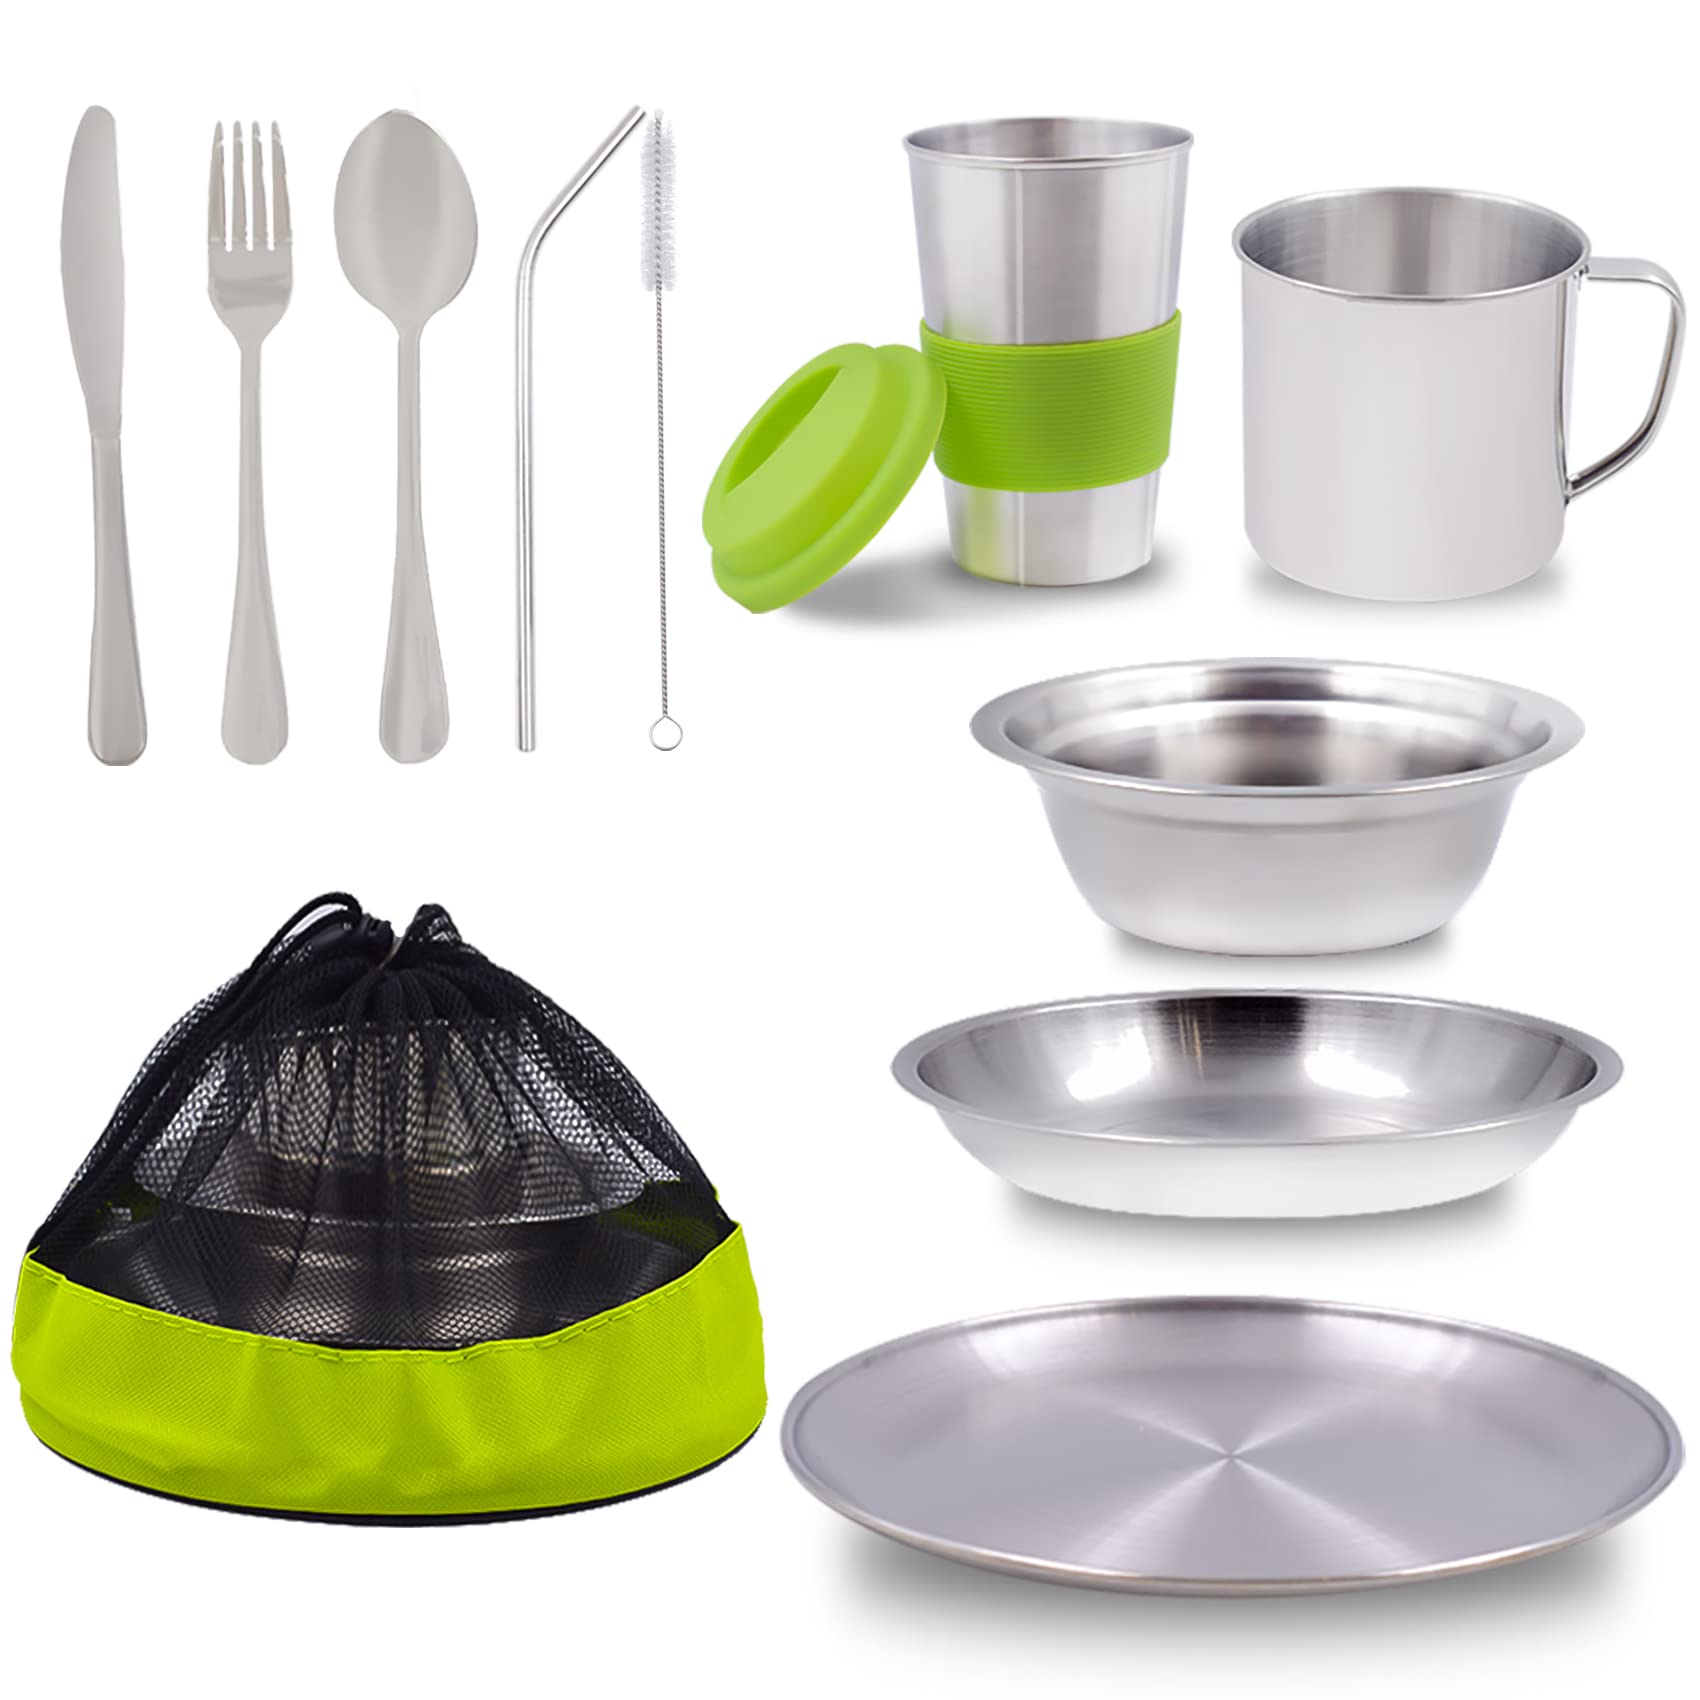 Kitchen Products & Utensils - glassware - glassware